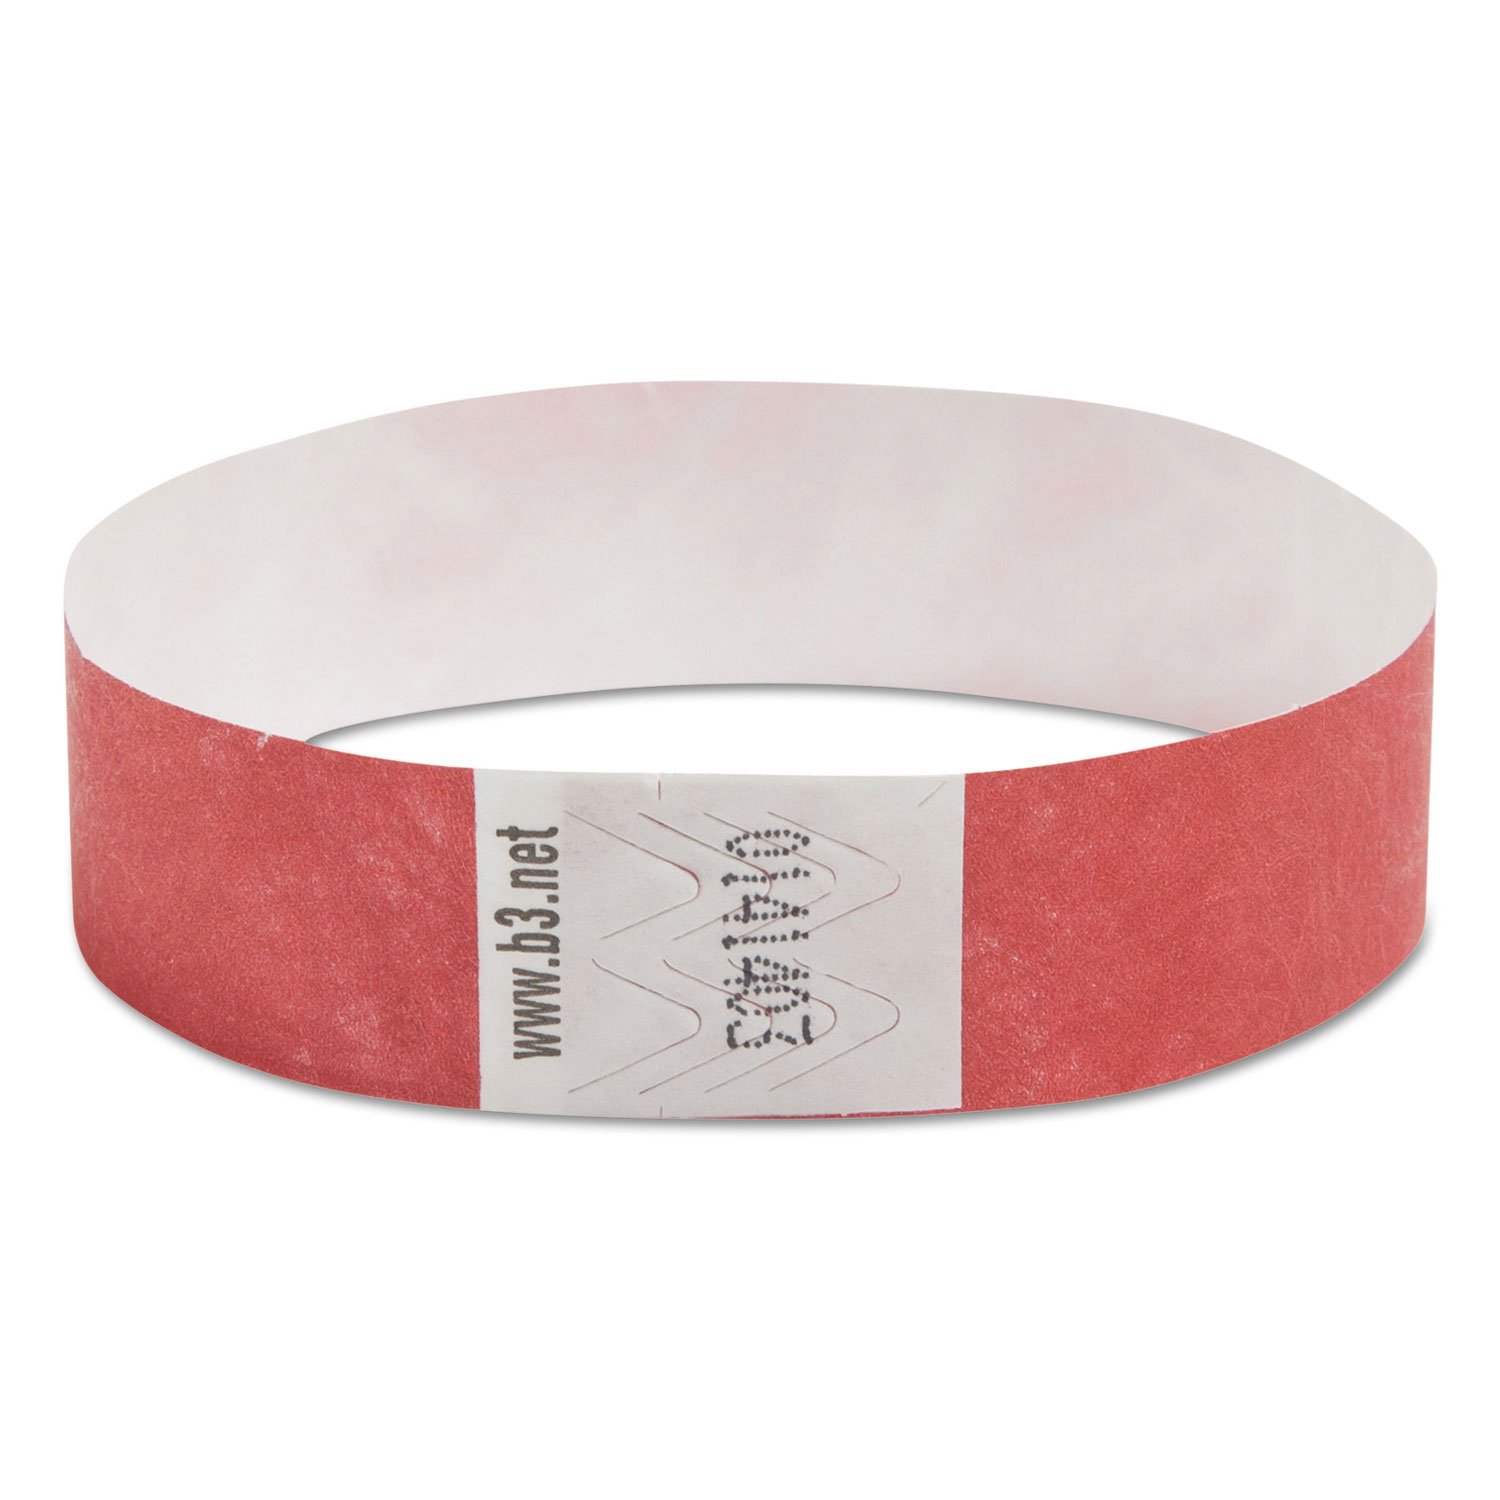  SICURIX 85020 Security Wristbands, 0.75 x 10, Red, 100/Pack (BAU85020) 